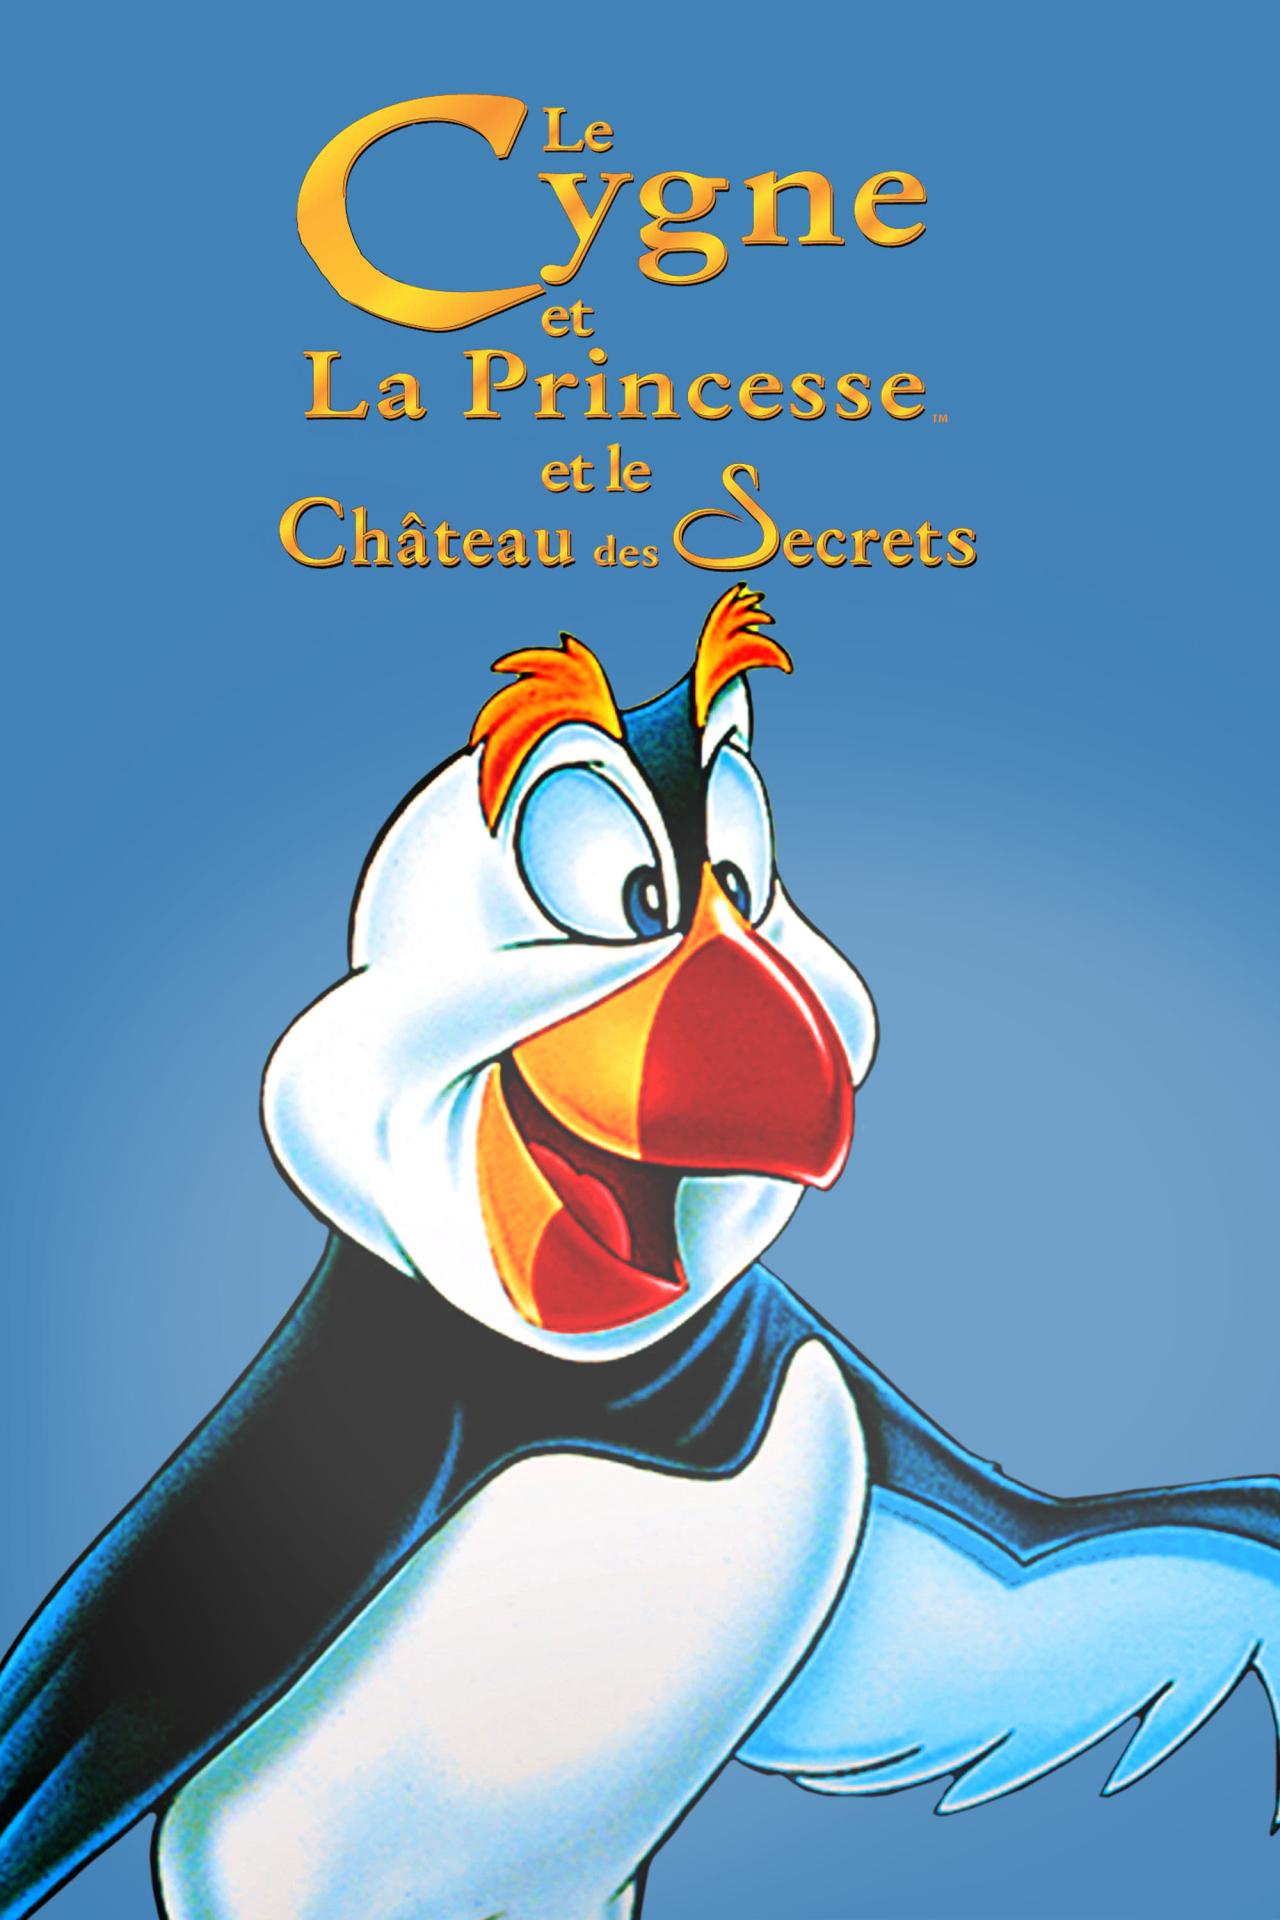 Le Cygne et la Princesse 2 : Le Château des secrets est-il disponible sur Netflix ou autre ?